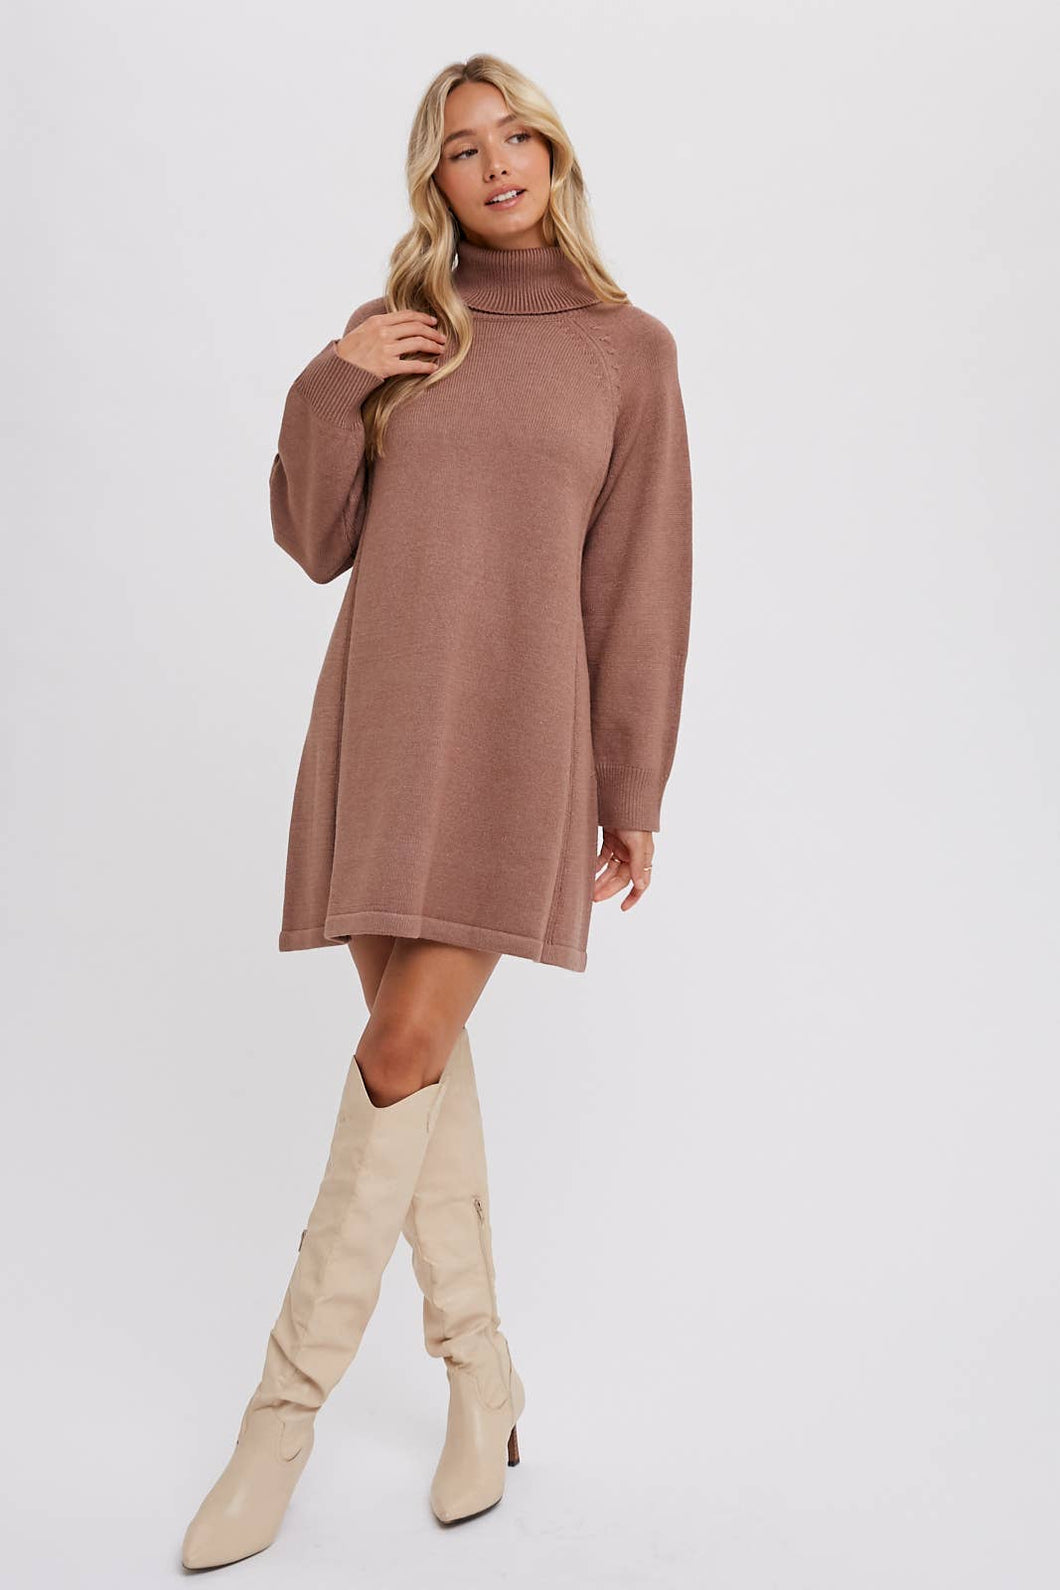 Turtleneck Knit Sweater Dress - Latte